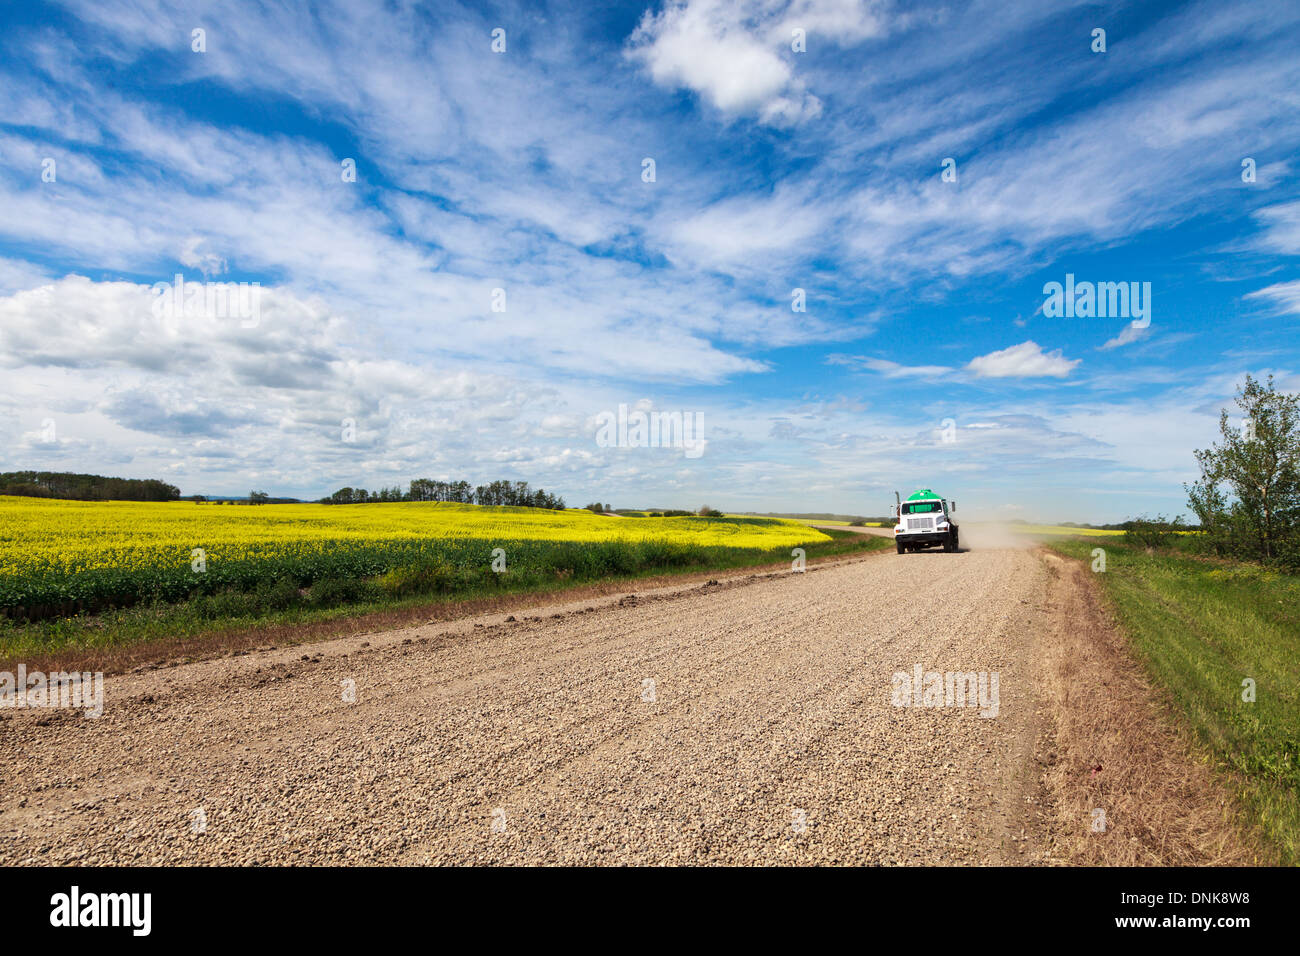 Ein LKW fährt über eine Schotterstraße vorbei an Feldern der Reife Raps oder Raps unter blauem Himmel in Alberta, Kanada Stockfoto